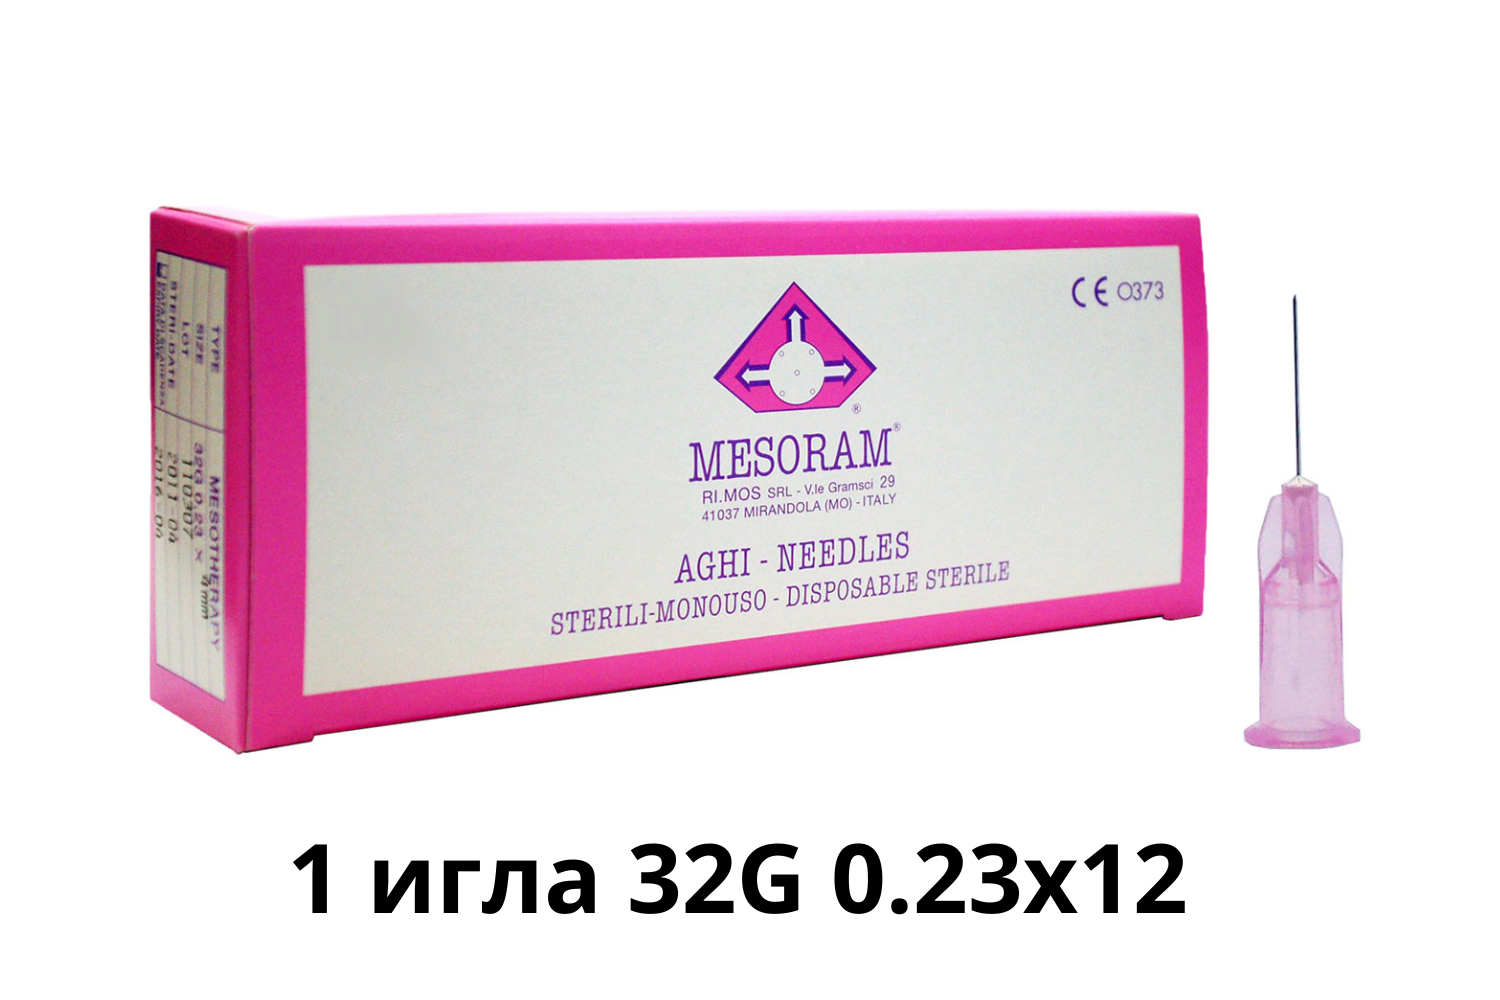 Игла медицинская инъекционная для мезотерапии (Мезоигла Mesoram) 32G 0.23x12, 1 шт, 712306 (Мезорам)